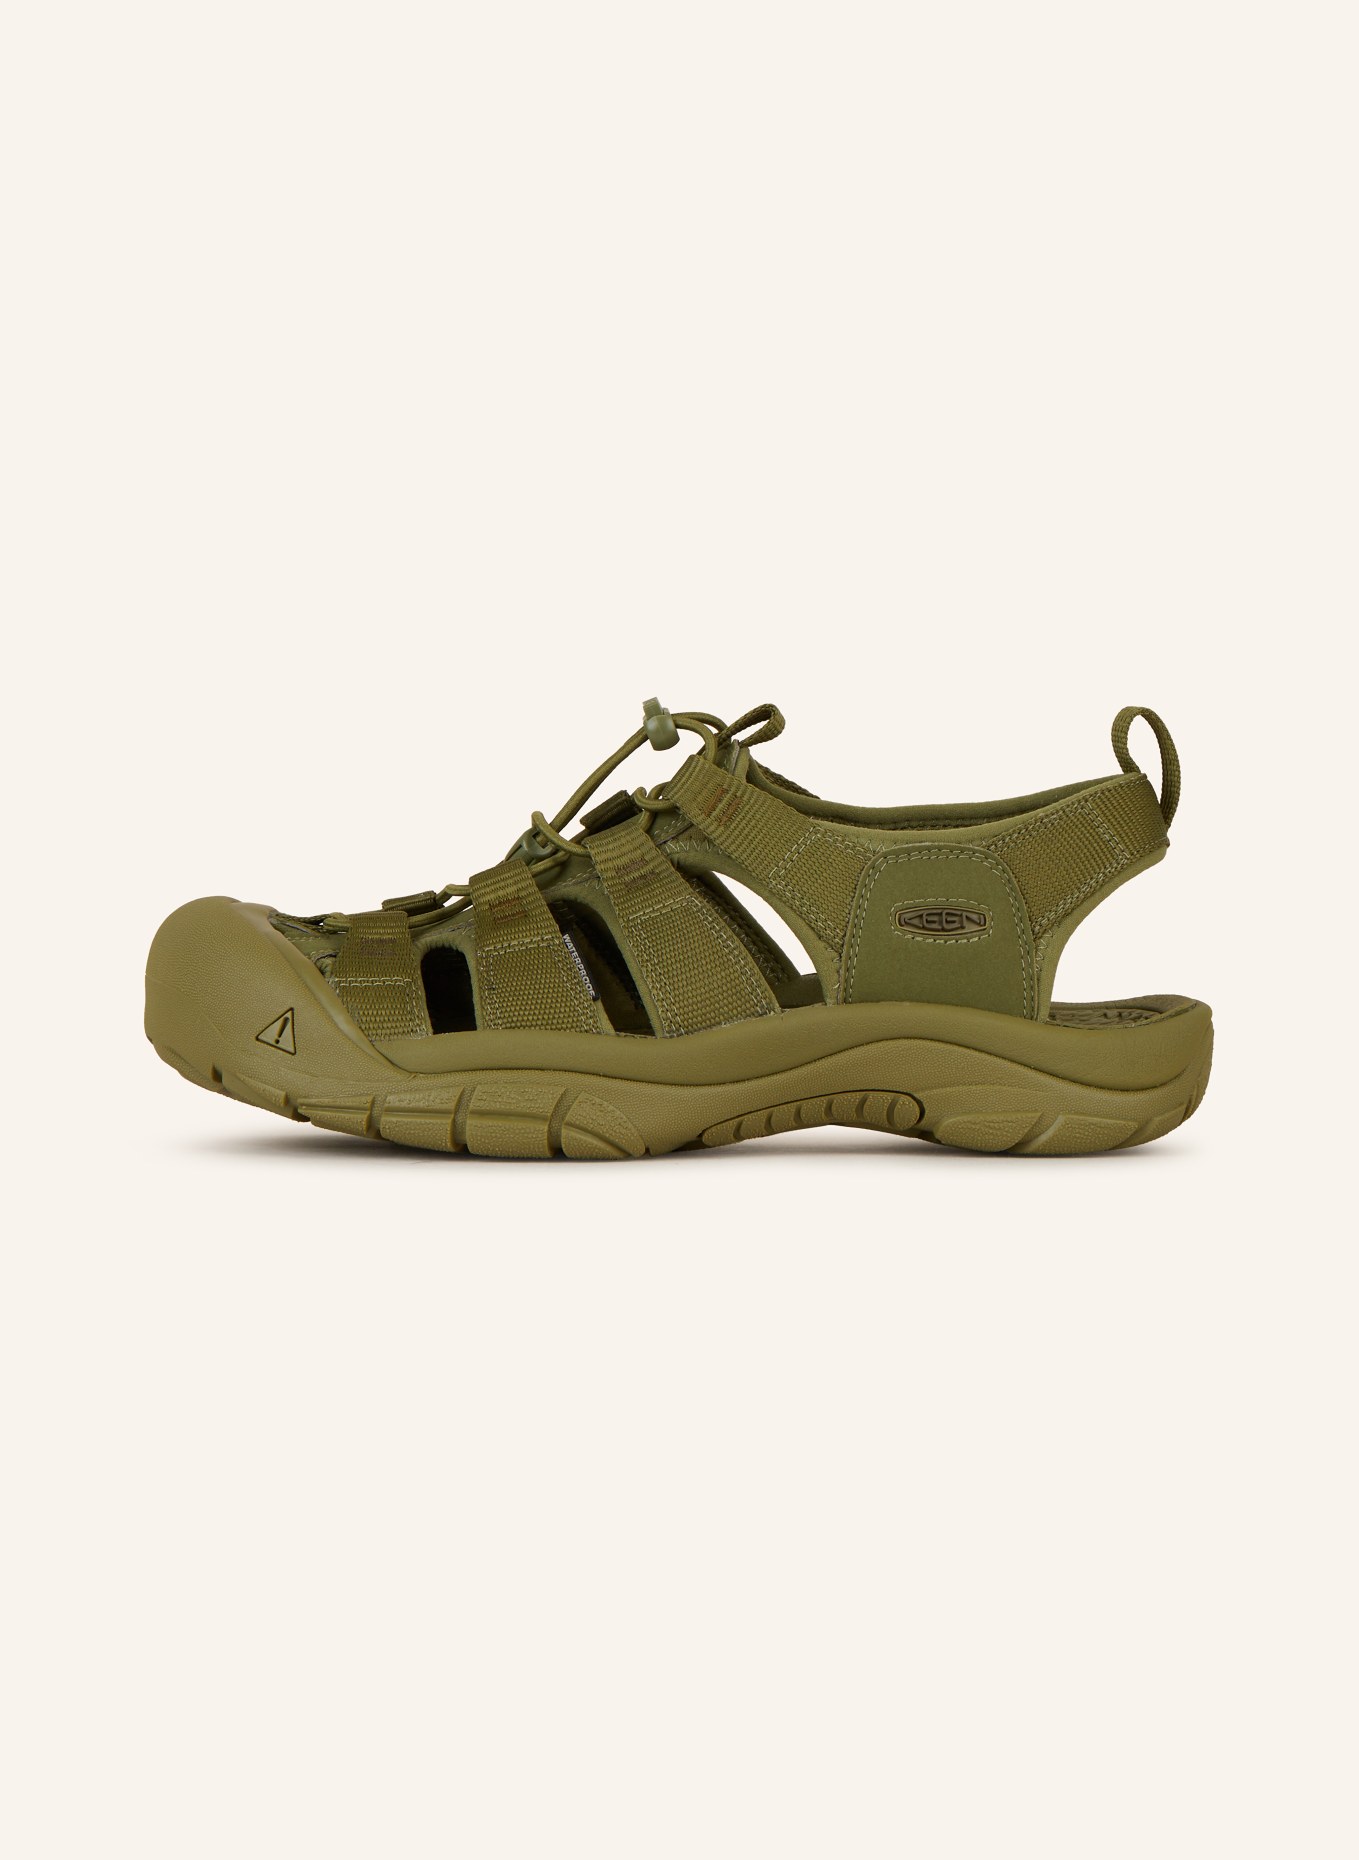 KEEN Trekking sandals NEWPORT H2, Color: OLIVE (Image 4)